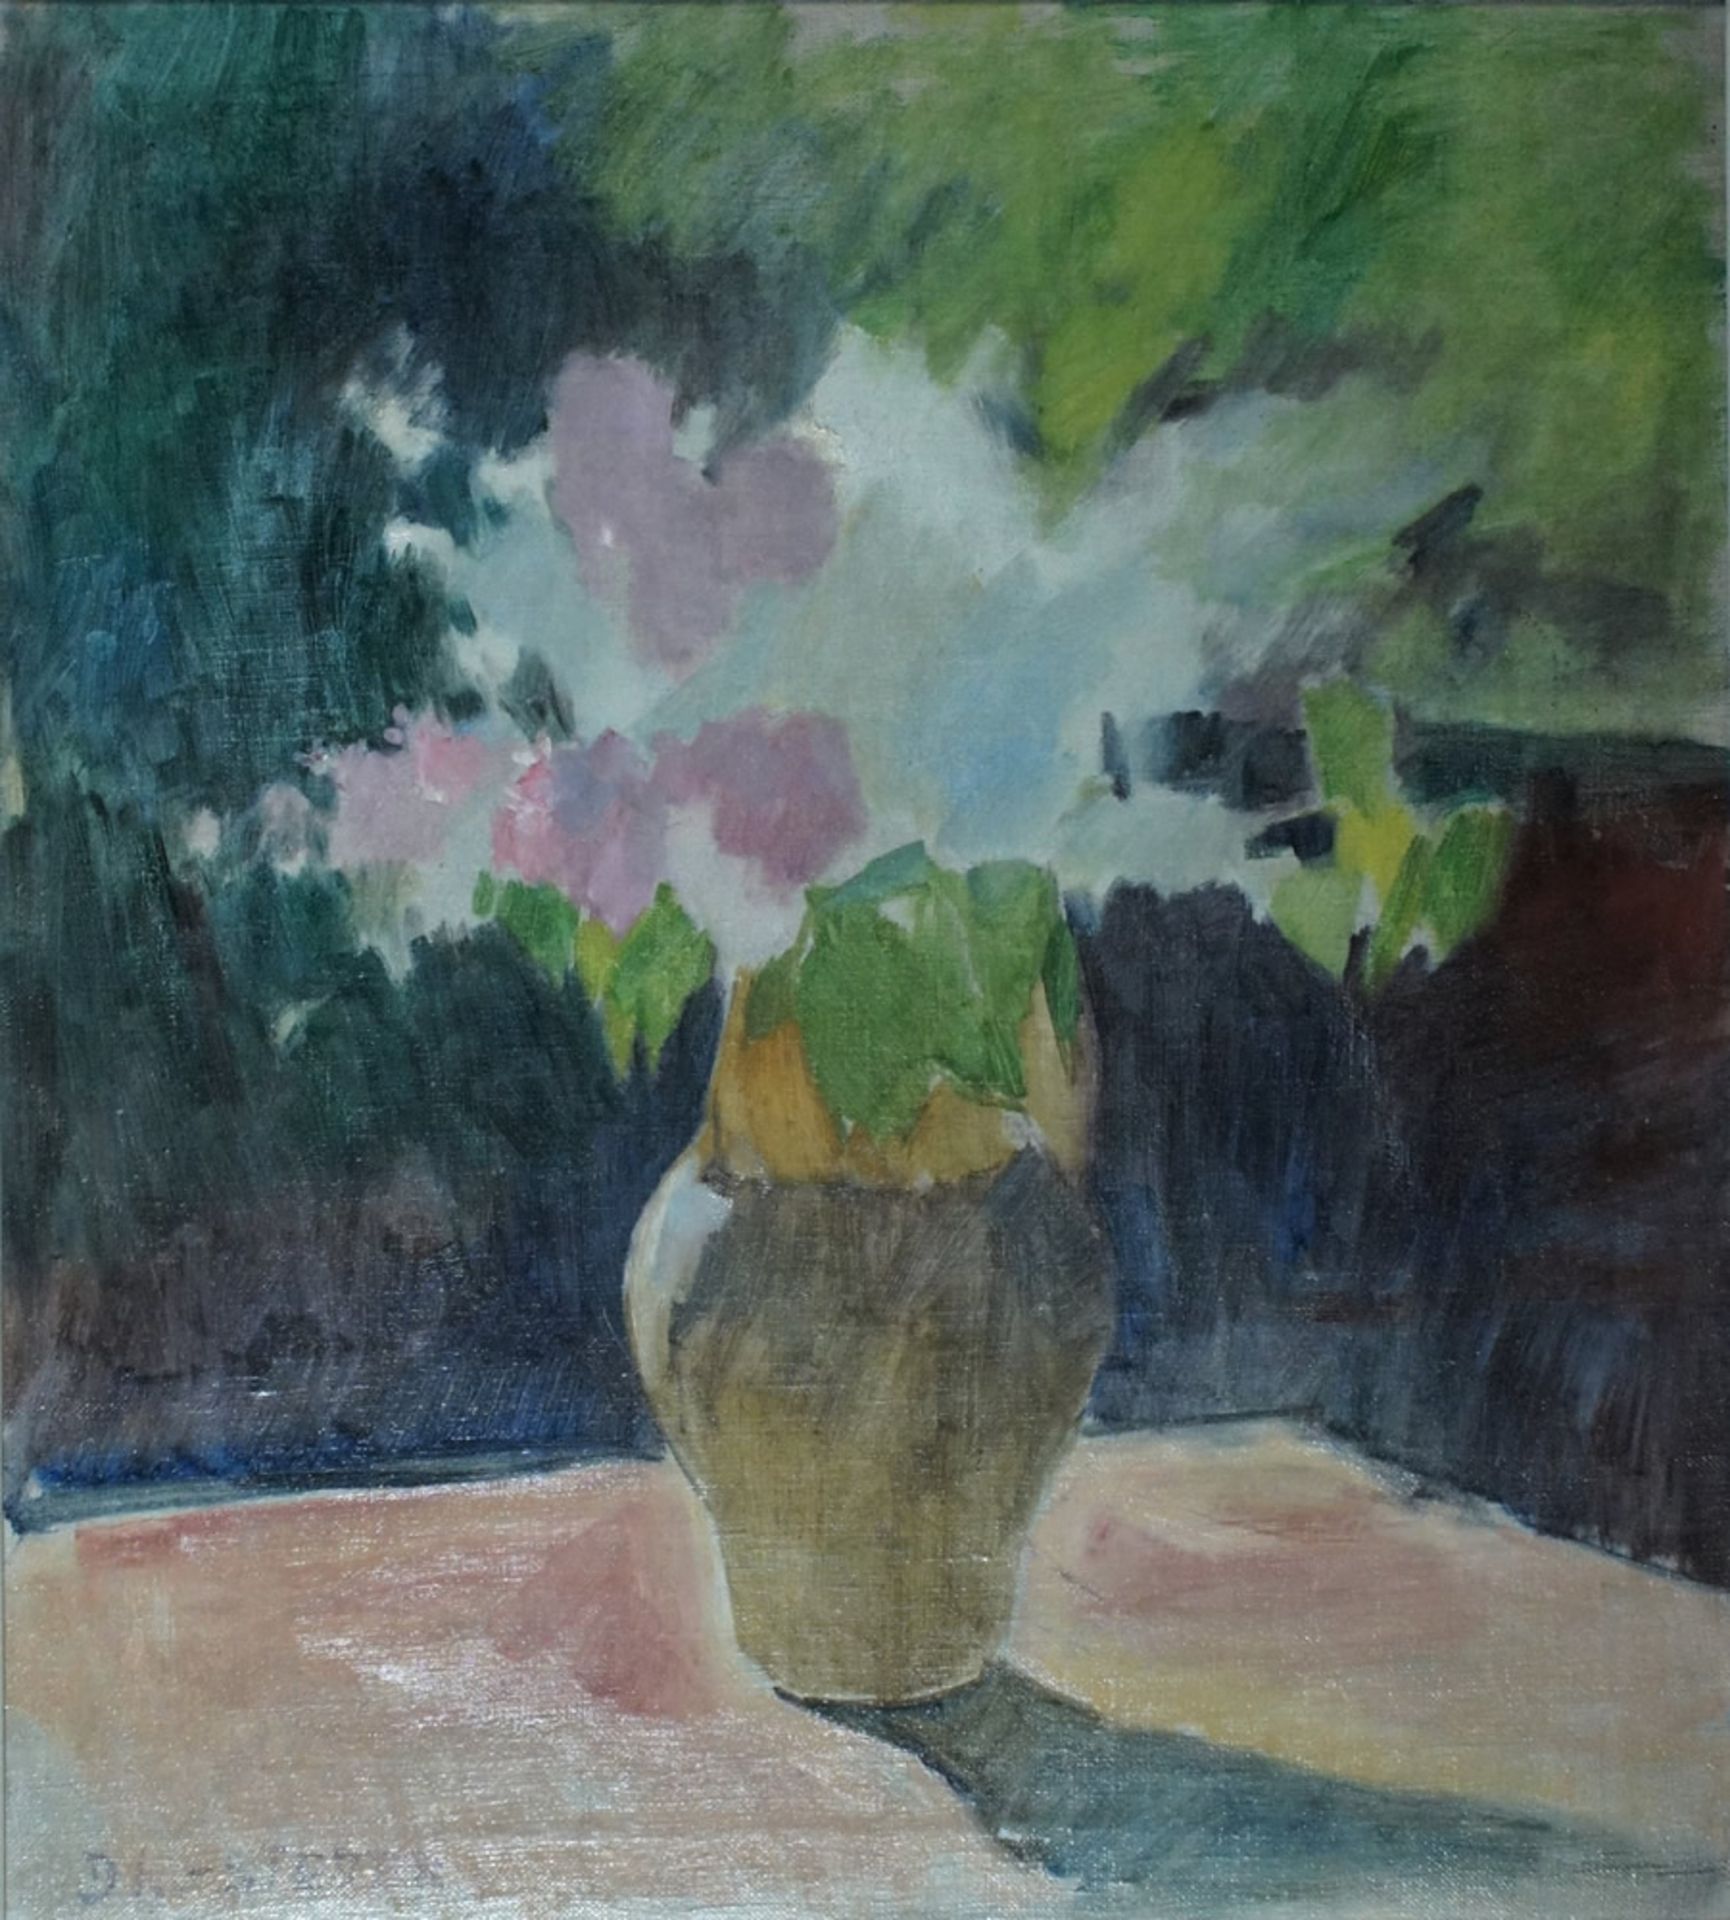 Stetter, Dora, Blumen in Vase, Öl, 52 x 47, sign.Stetter, Dora, Blumen in Vase, Öl, 52 x